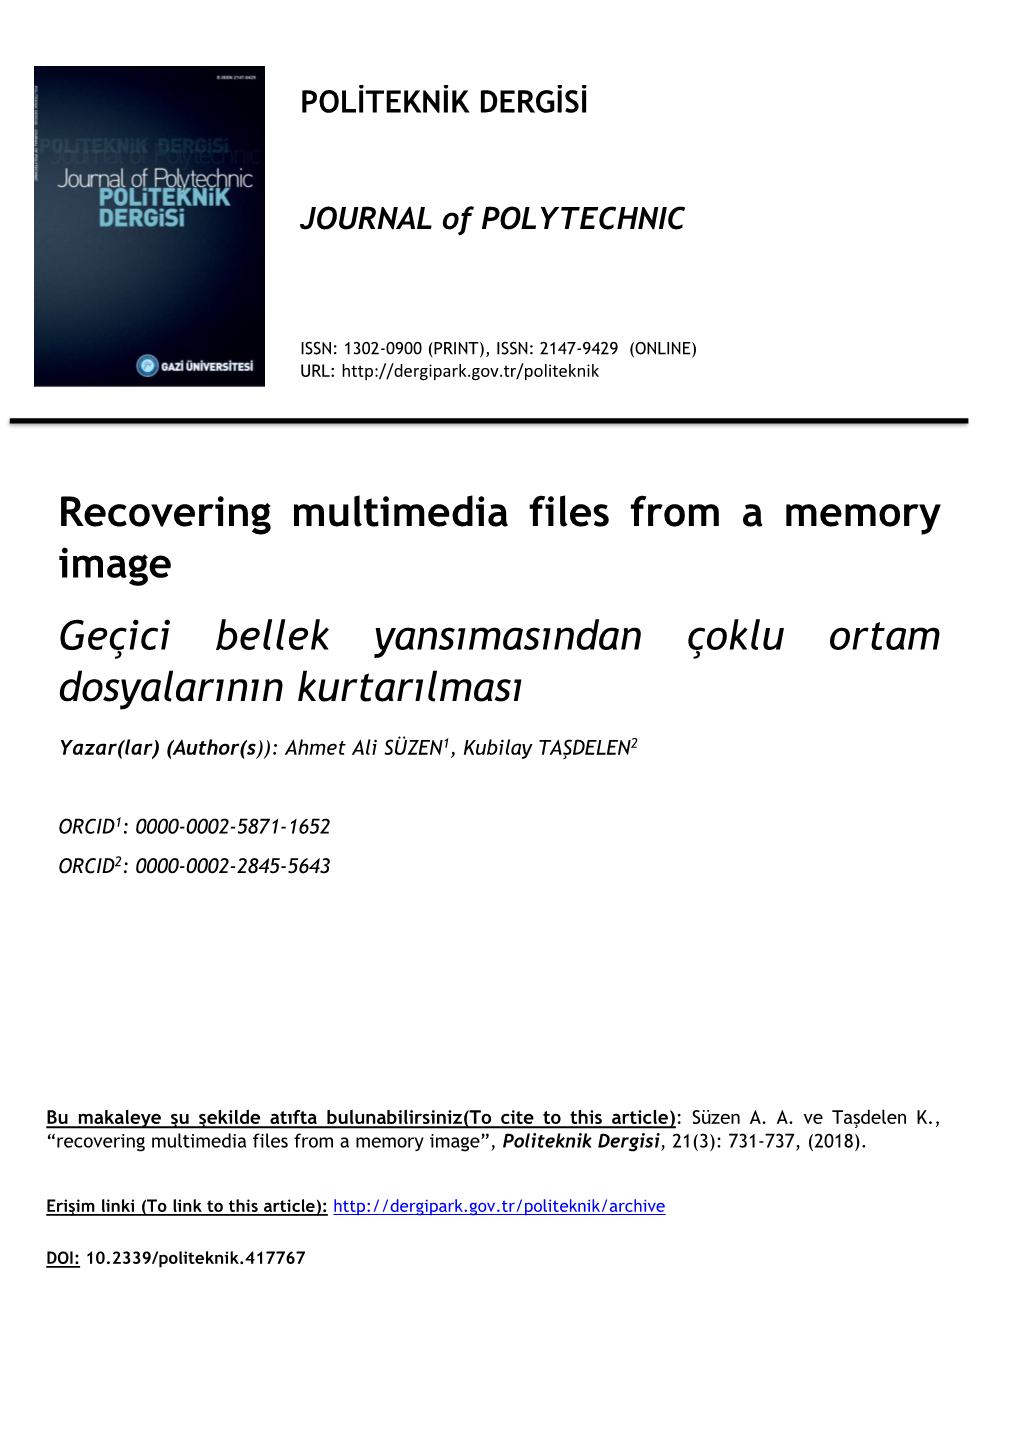 Recovering Multimedia Files from a Memory Image Geçici Bellek Yansımasından Çoklu Ortam Dosyalarının Kurtarılması